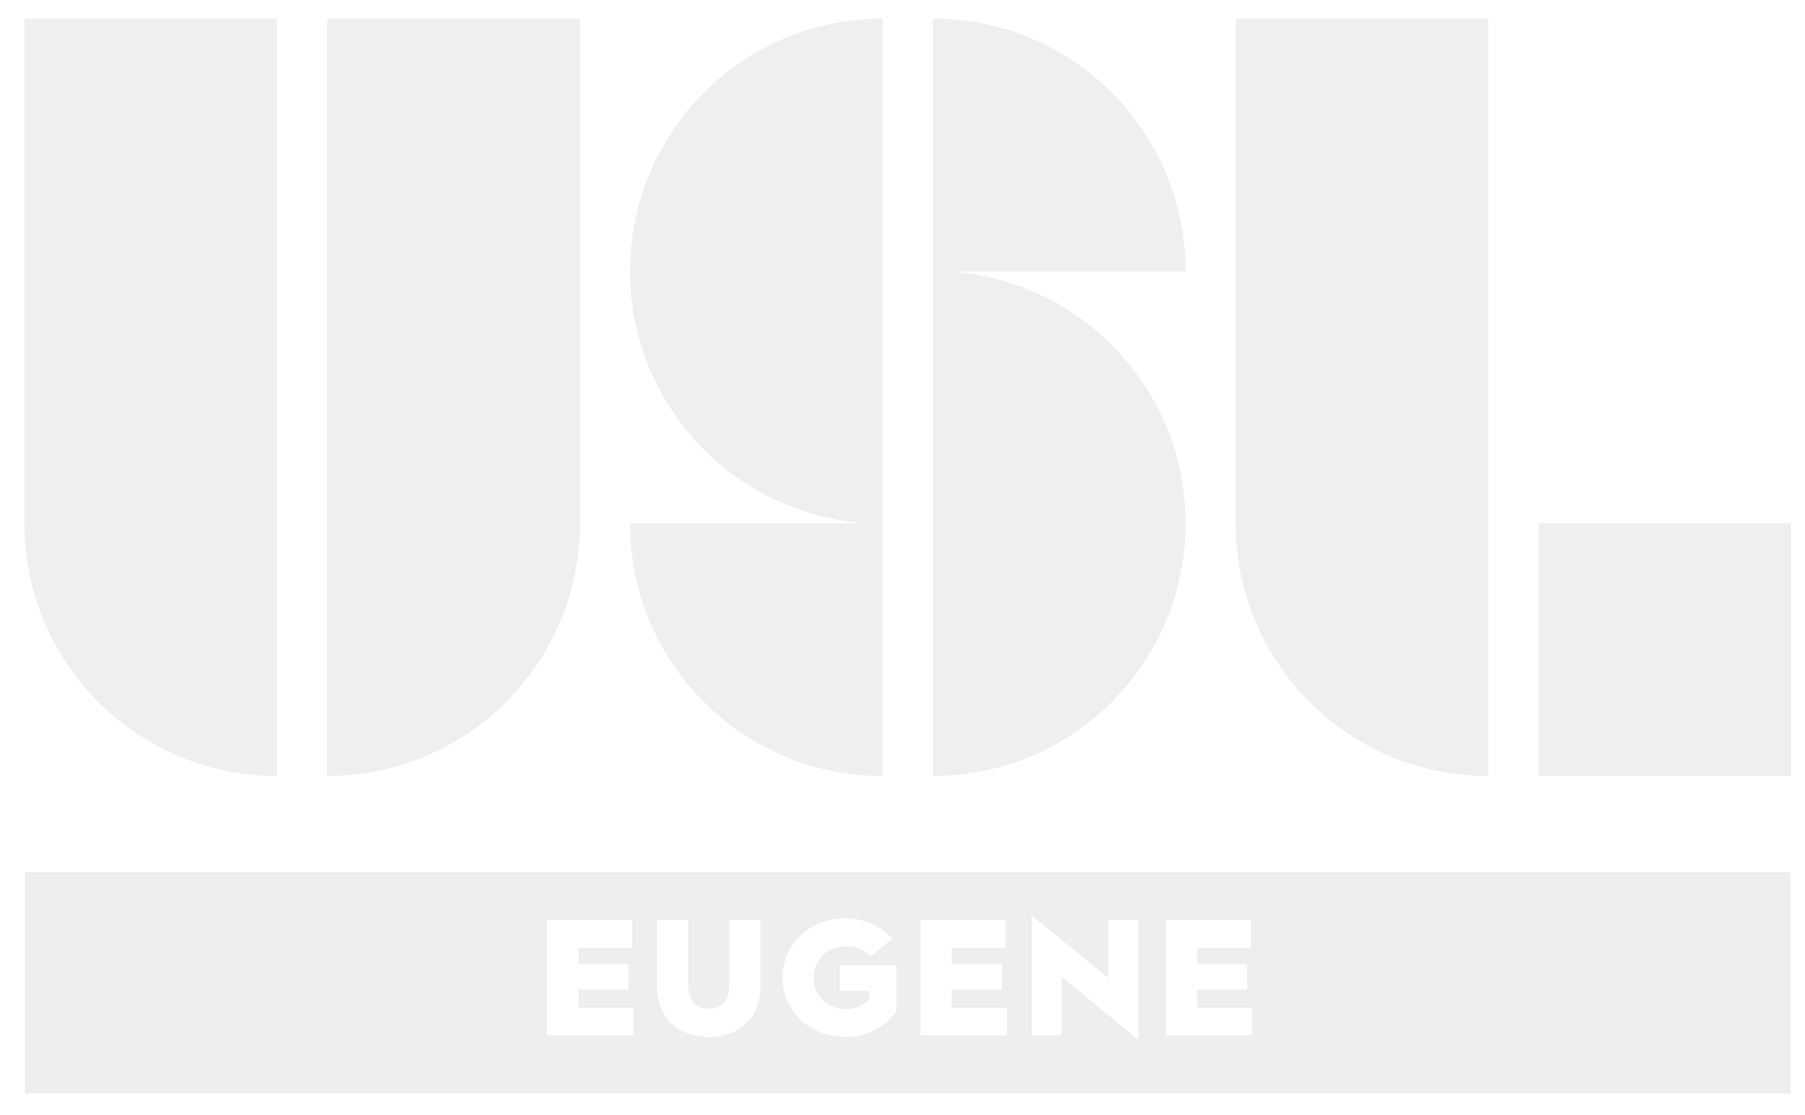 USL Eugene